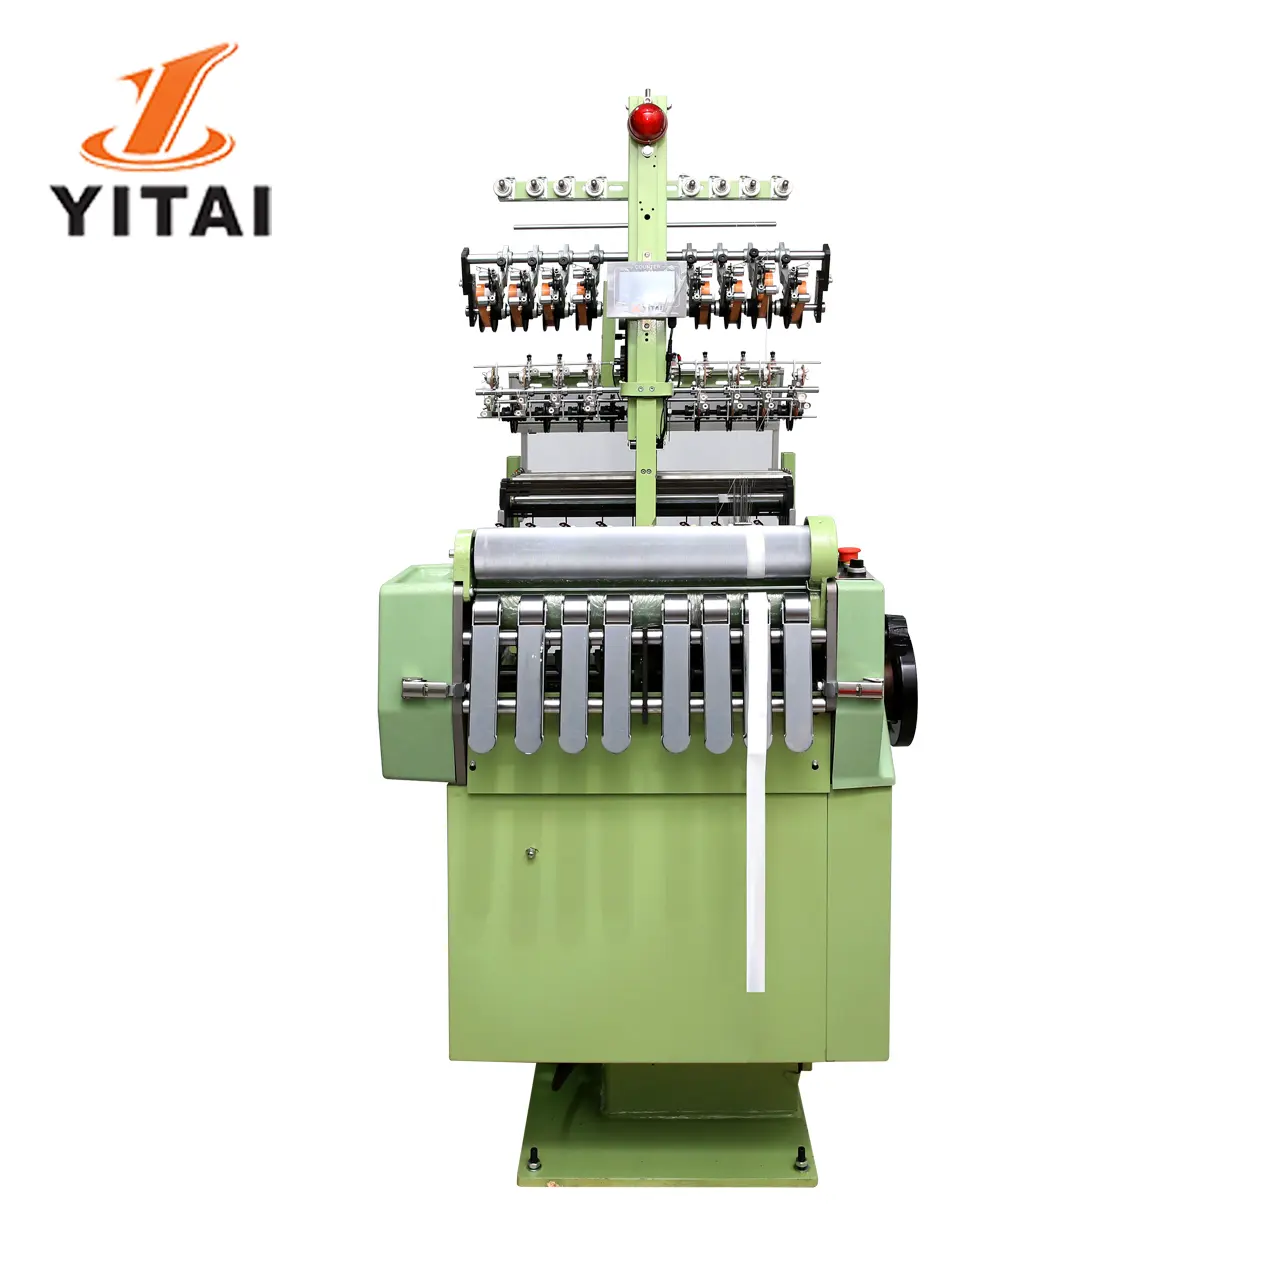 Yitai agulha estreita de alta velocidade, máquina de trança automática agulhas de tecido